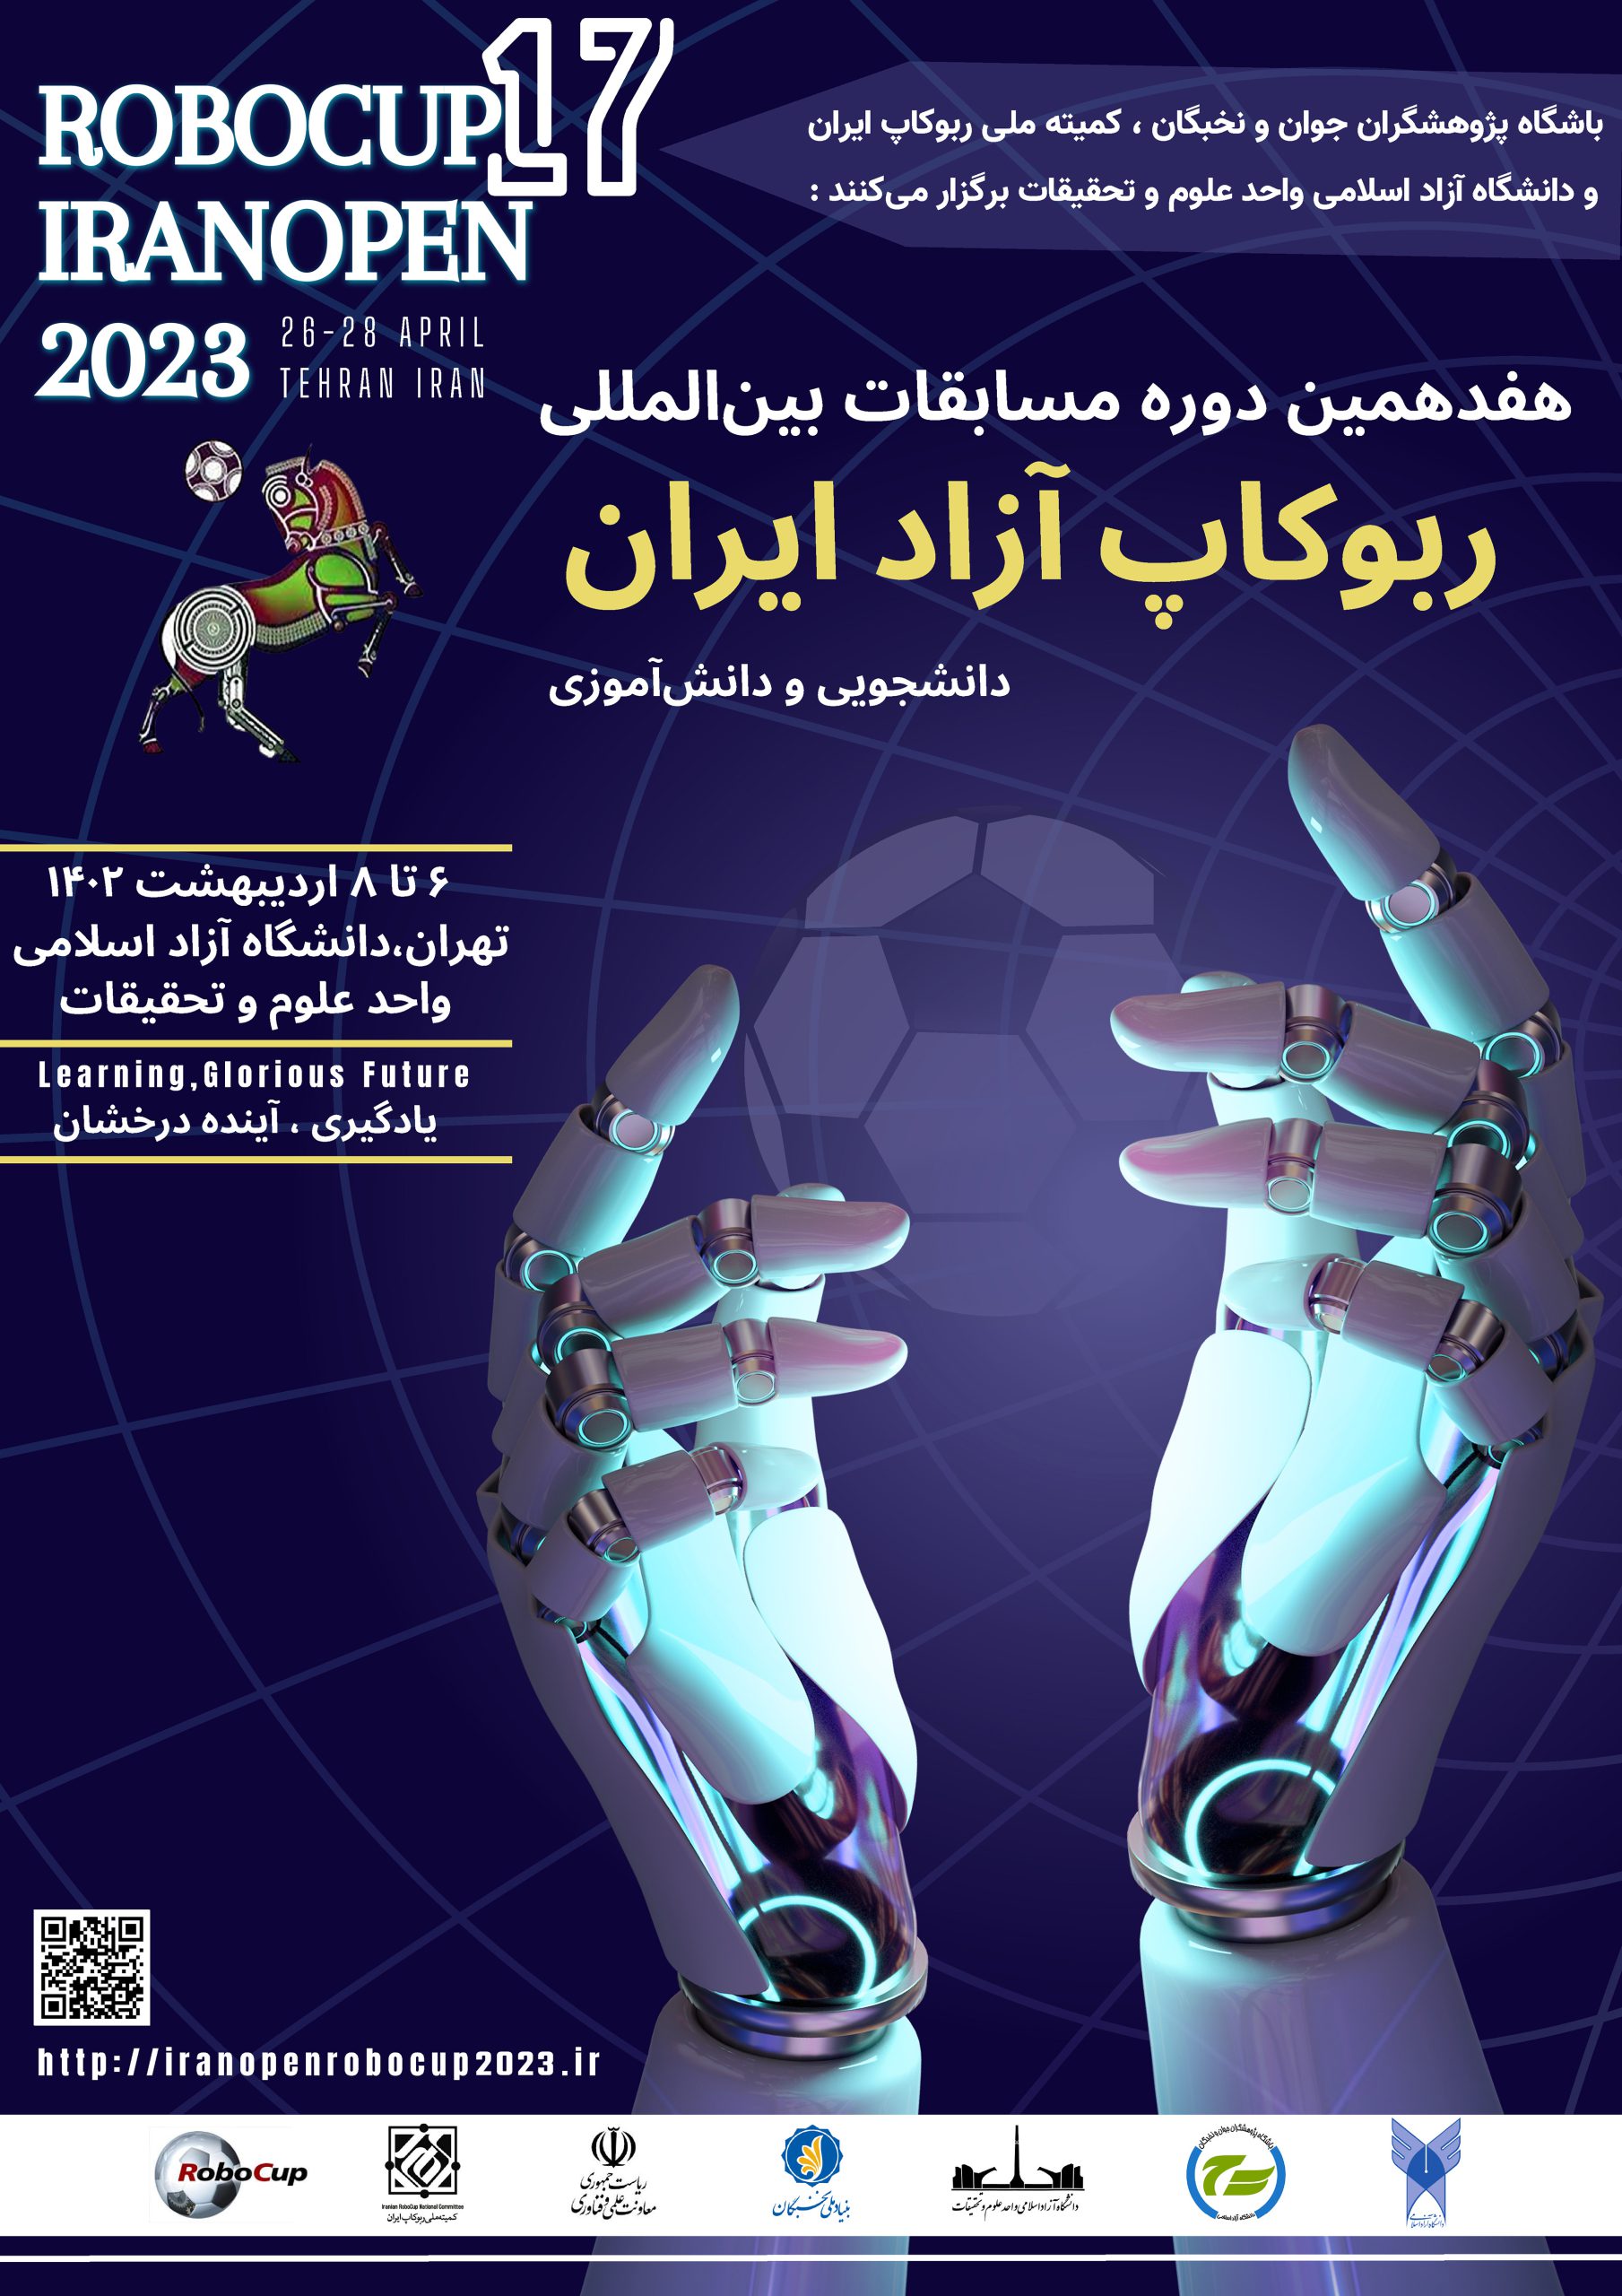 پوستر مسابقات روبوکاپ آزاد ایران